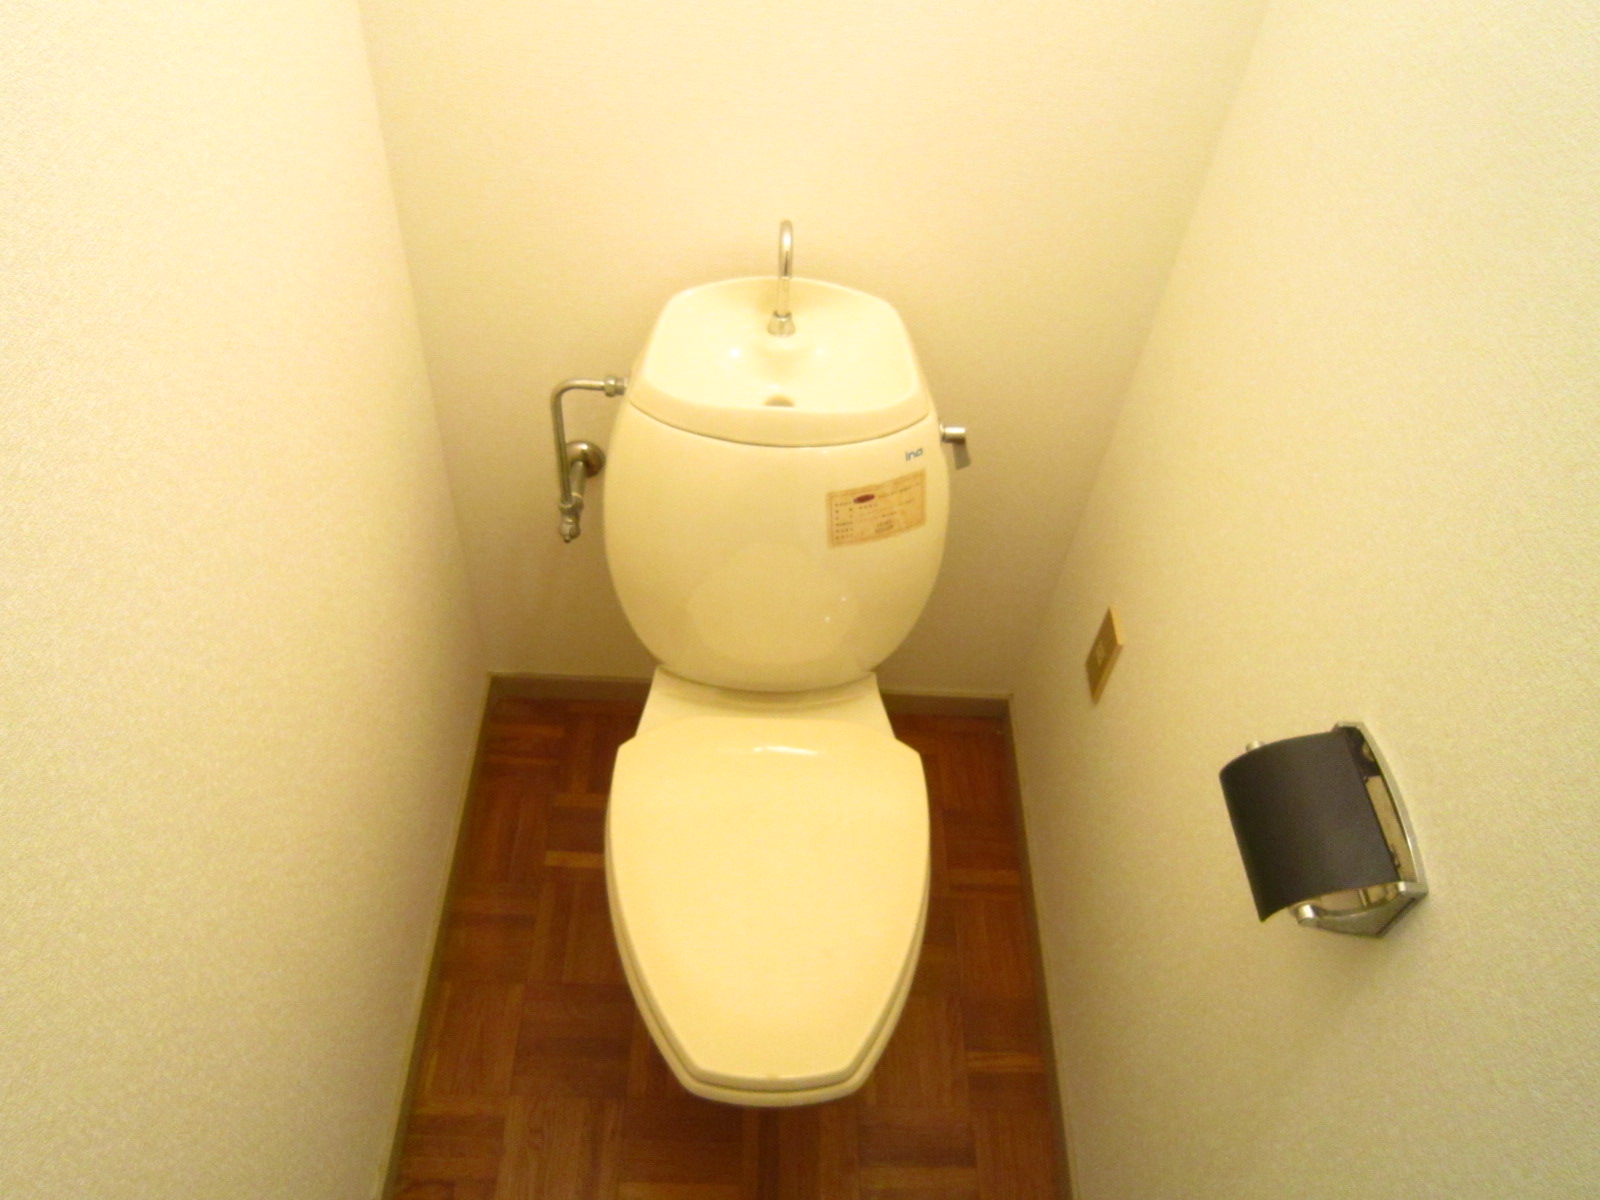 Toilet. Space to settle down toilet